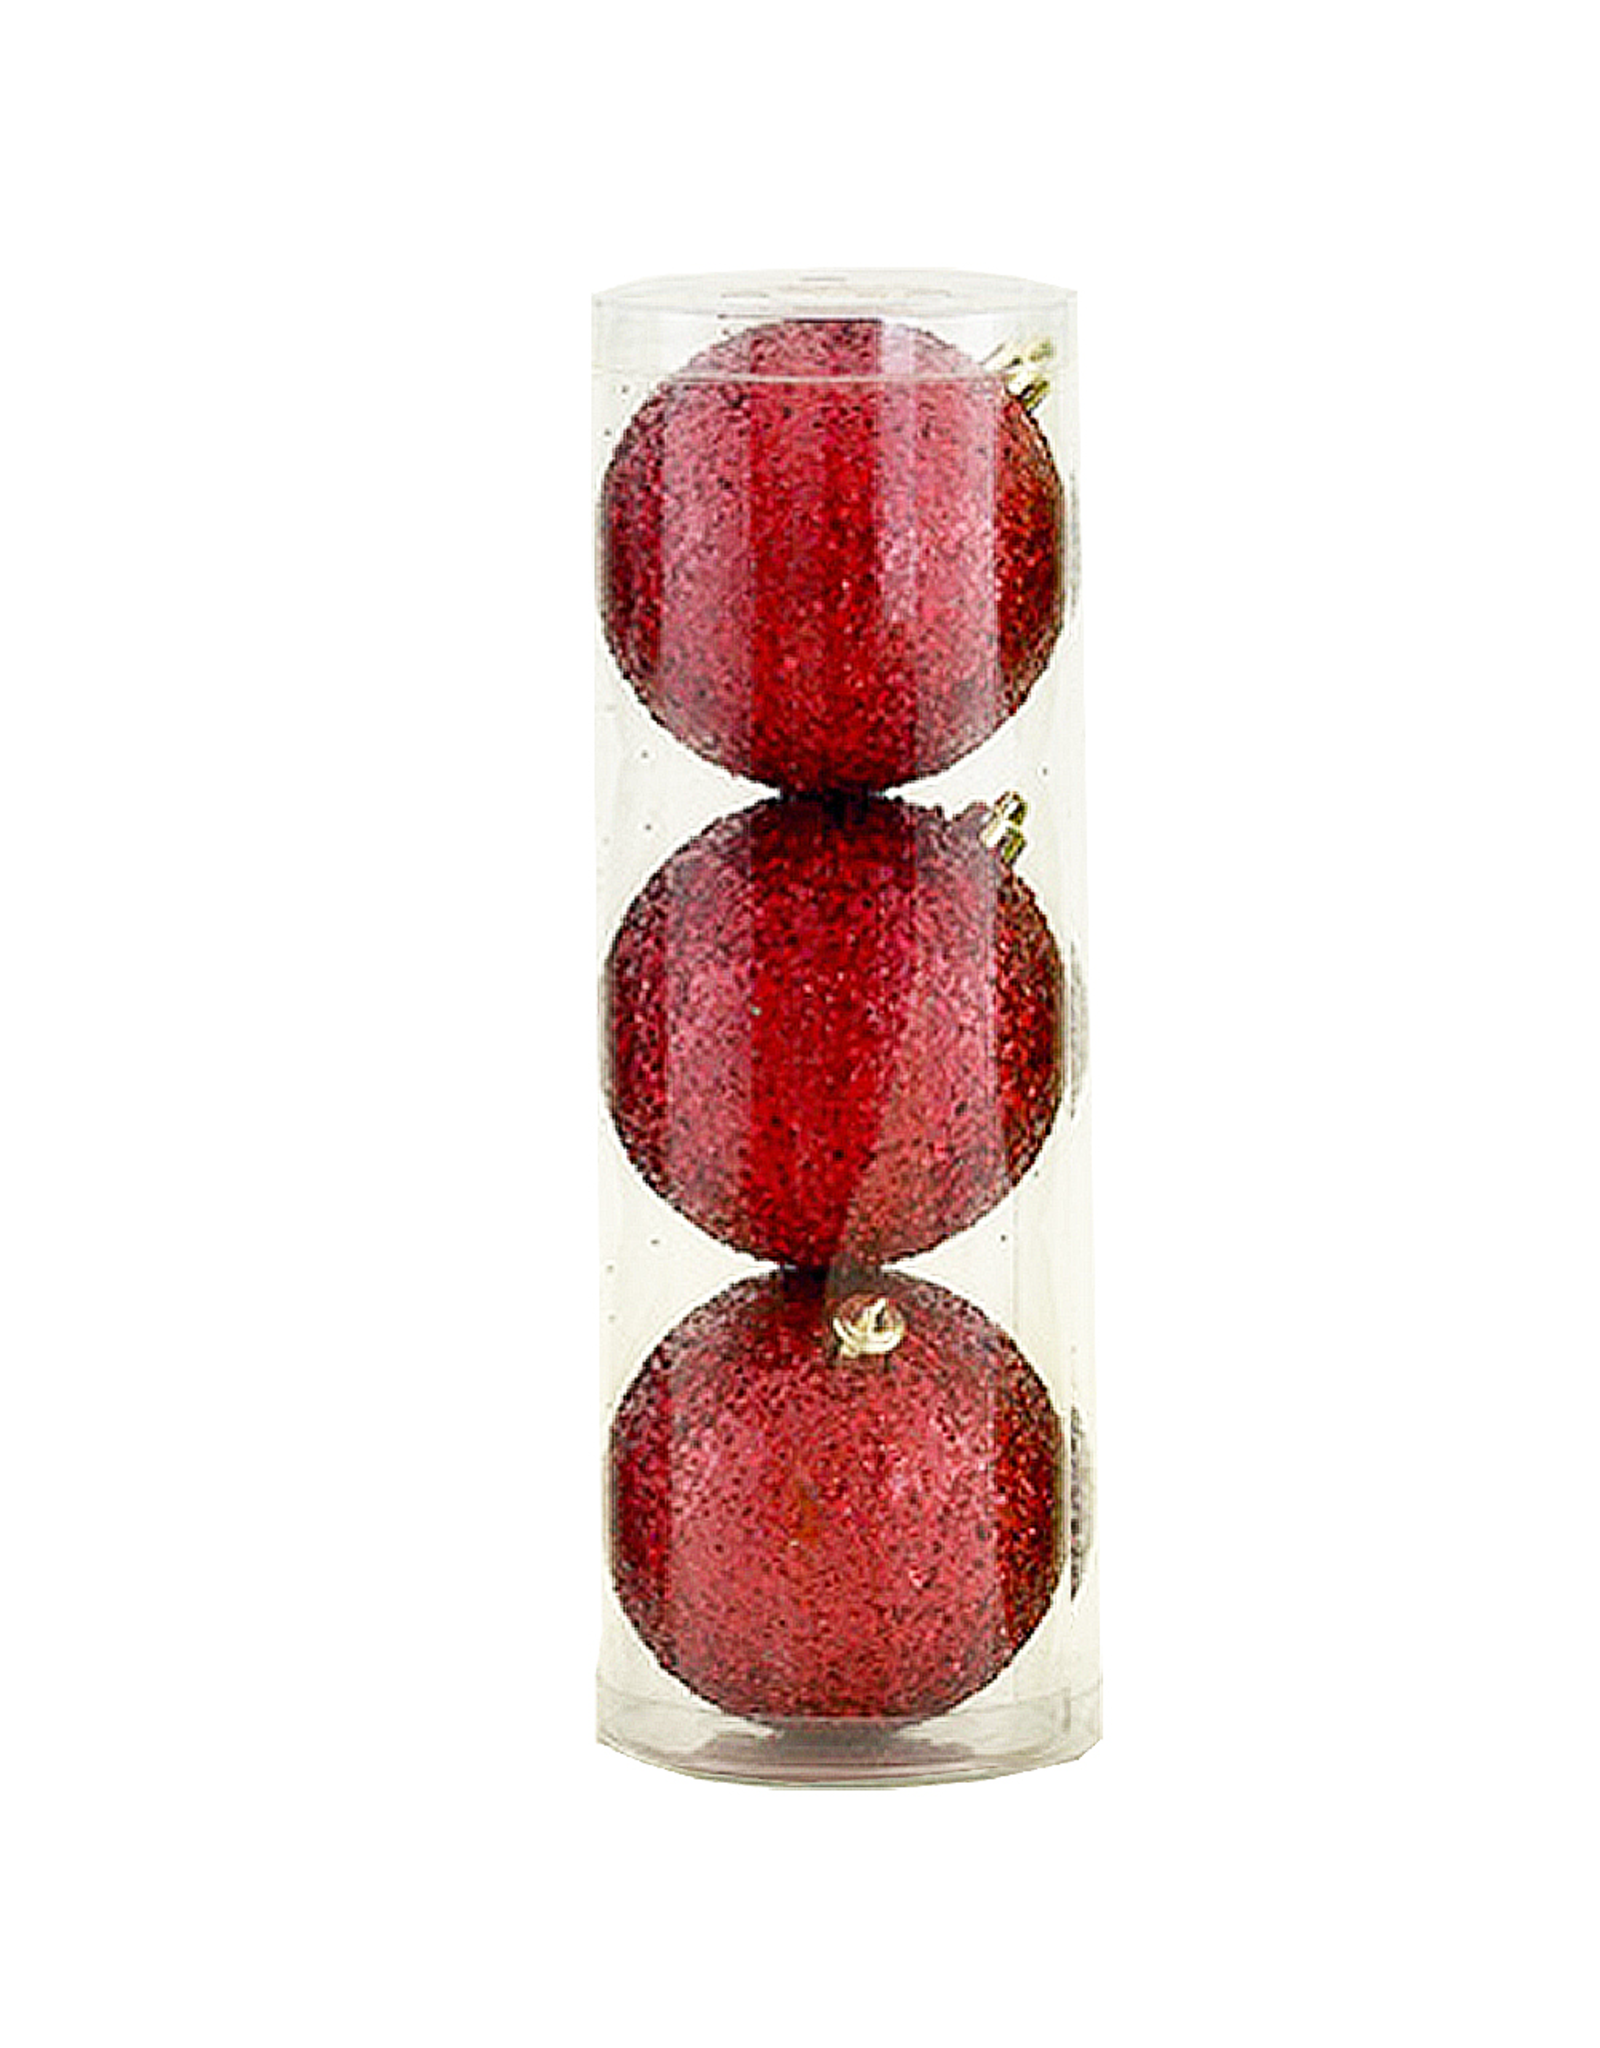 Kurt Adler Shatterproof Ball Ornaments Red Glittered 100MM Set of 3